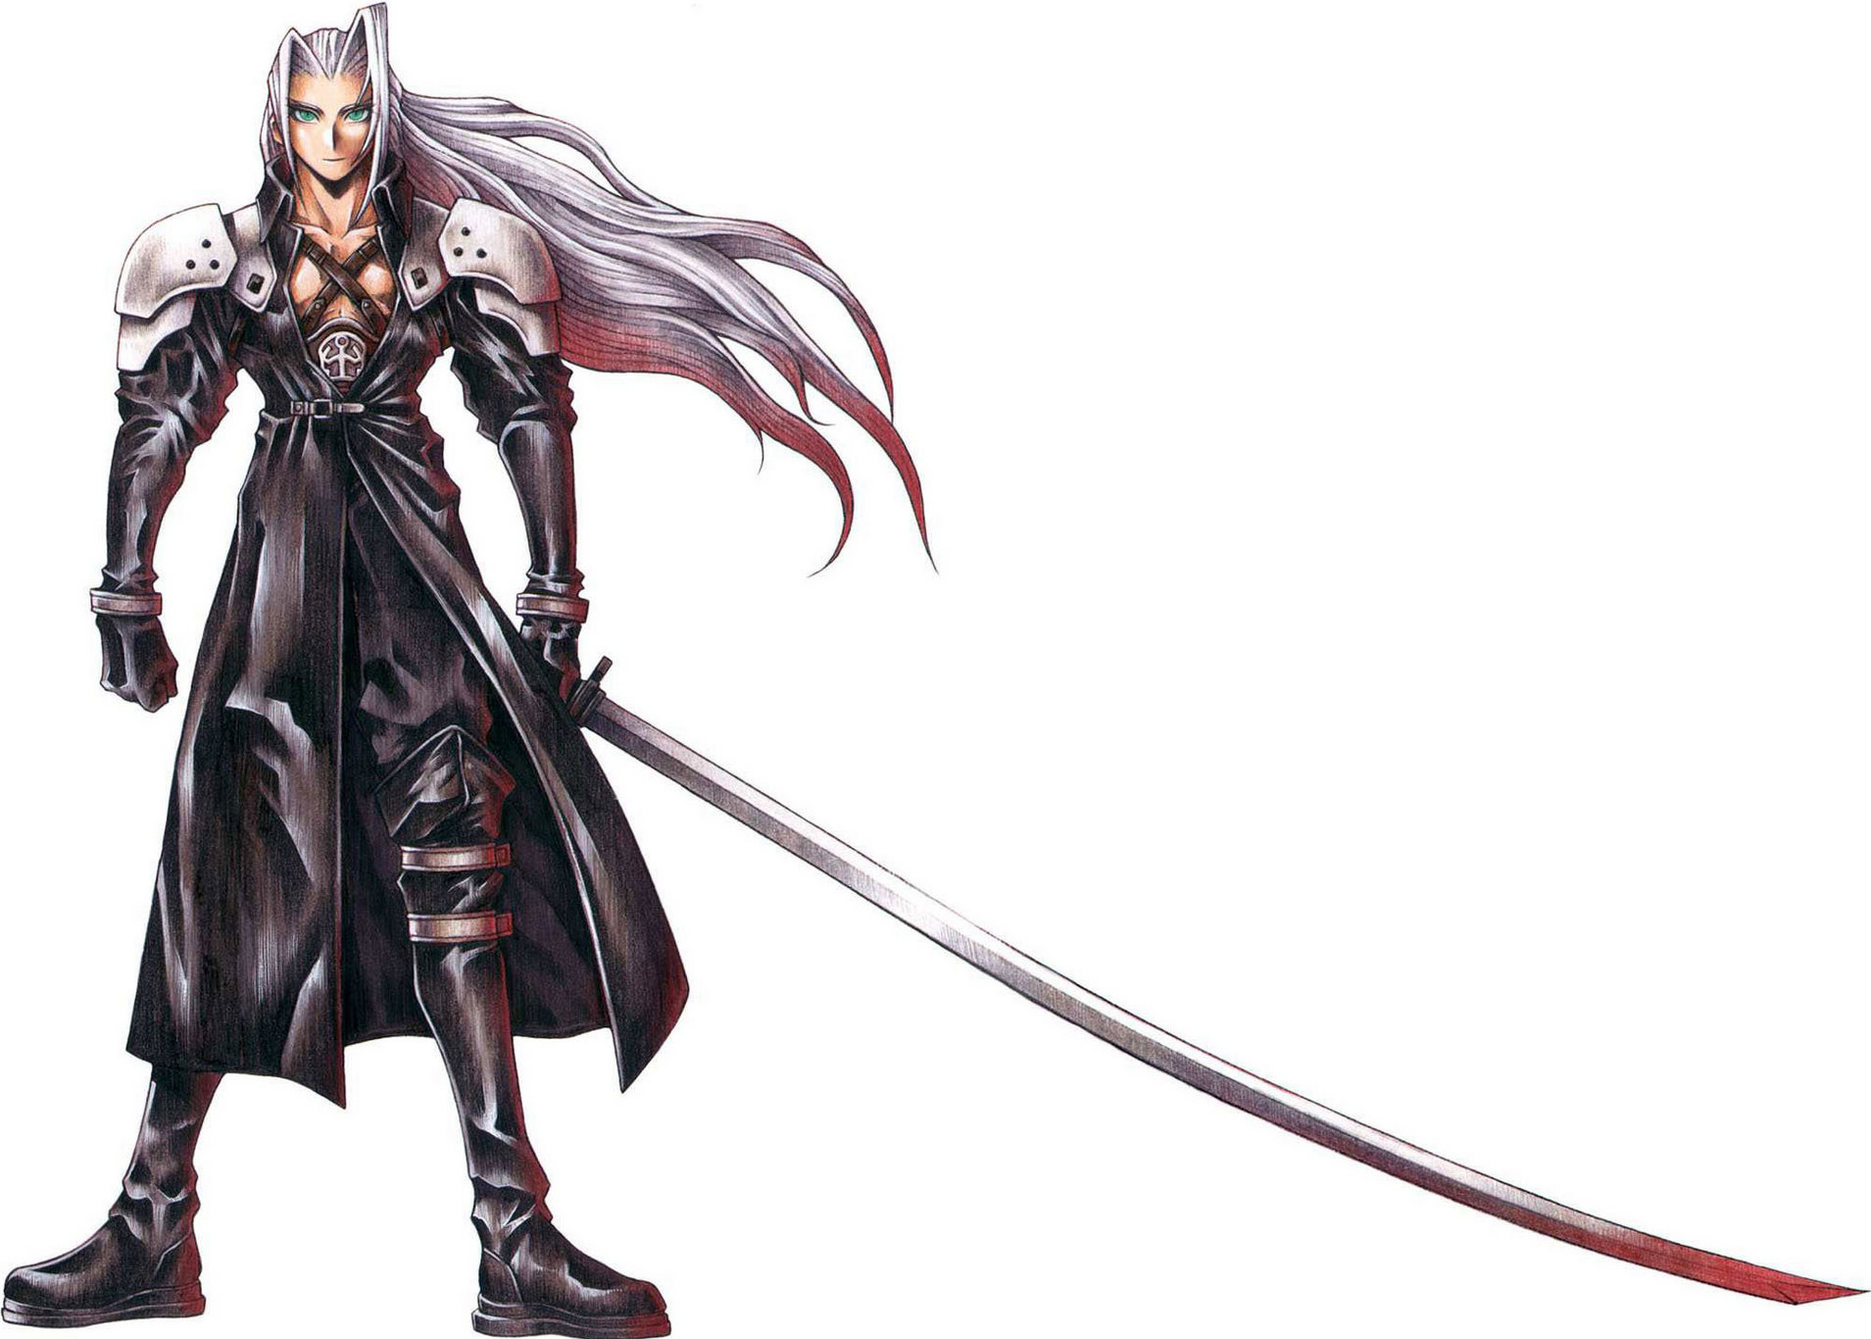 Sephiroth - Final Fantasy Wiki: Sephiroth là một trong những nhân vật chính được yêu thích nhất trong Final Fantasy. Tìm hiểu thêm về nhân vật đầy quyến rũ này trên Final Fantasy Wiki để khám phá những chi tiết độc đáo về Sephiroth.